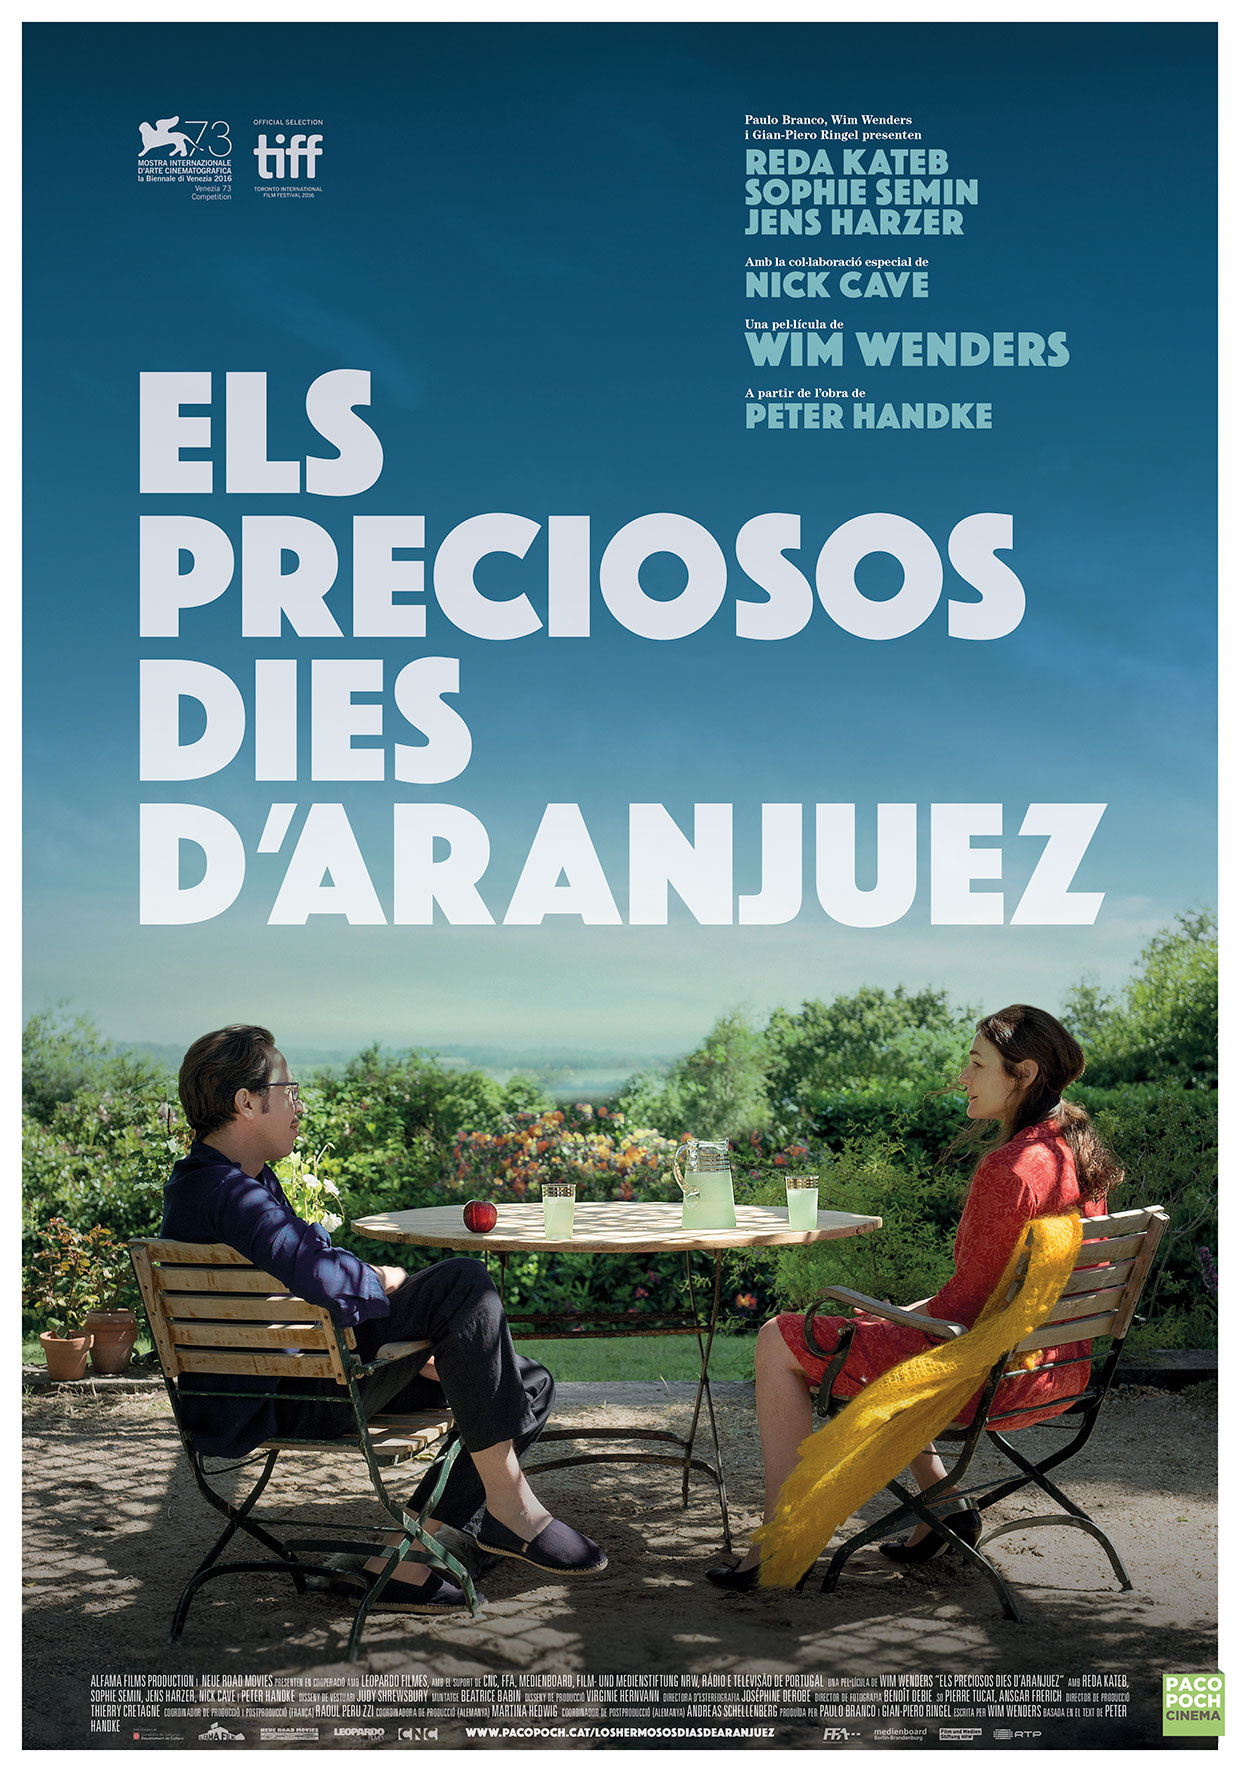  فیلم سینمایی Les beaux jours d'Aranjuez به کارگردانی ویم وندرس